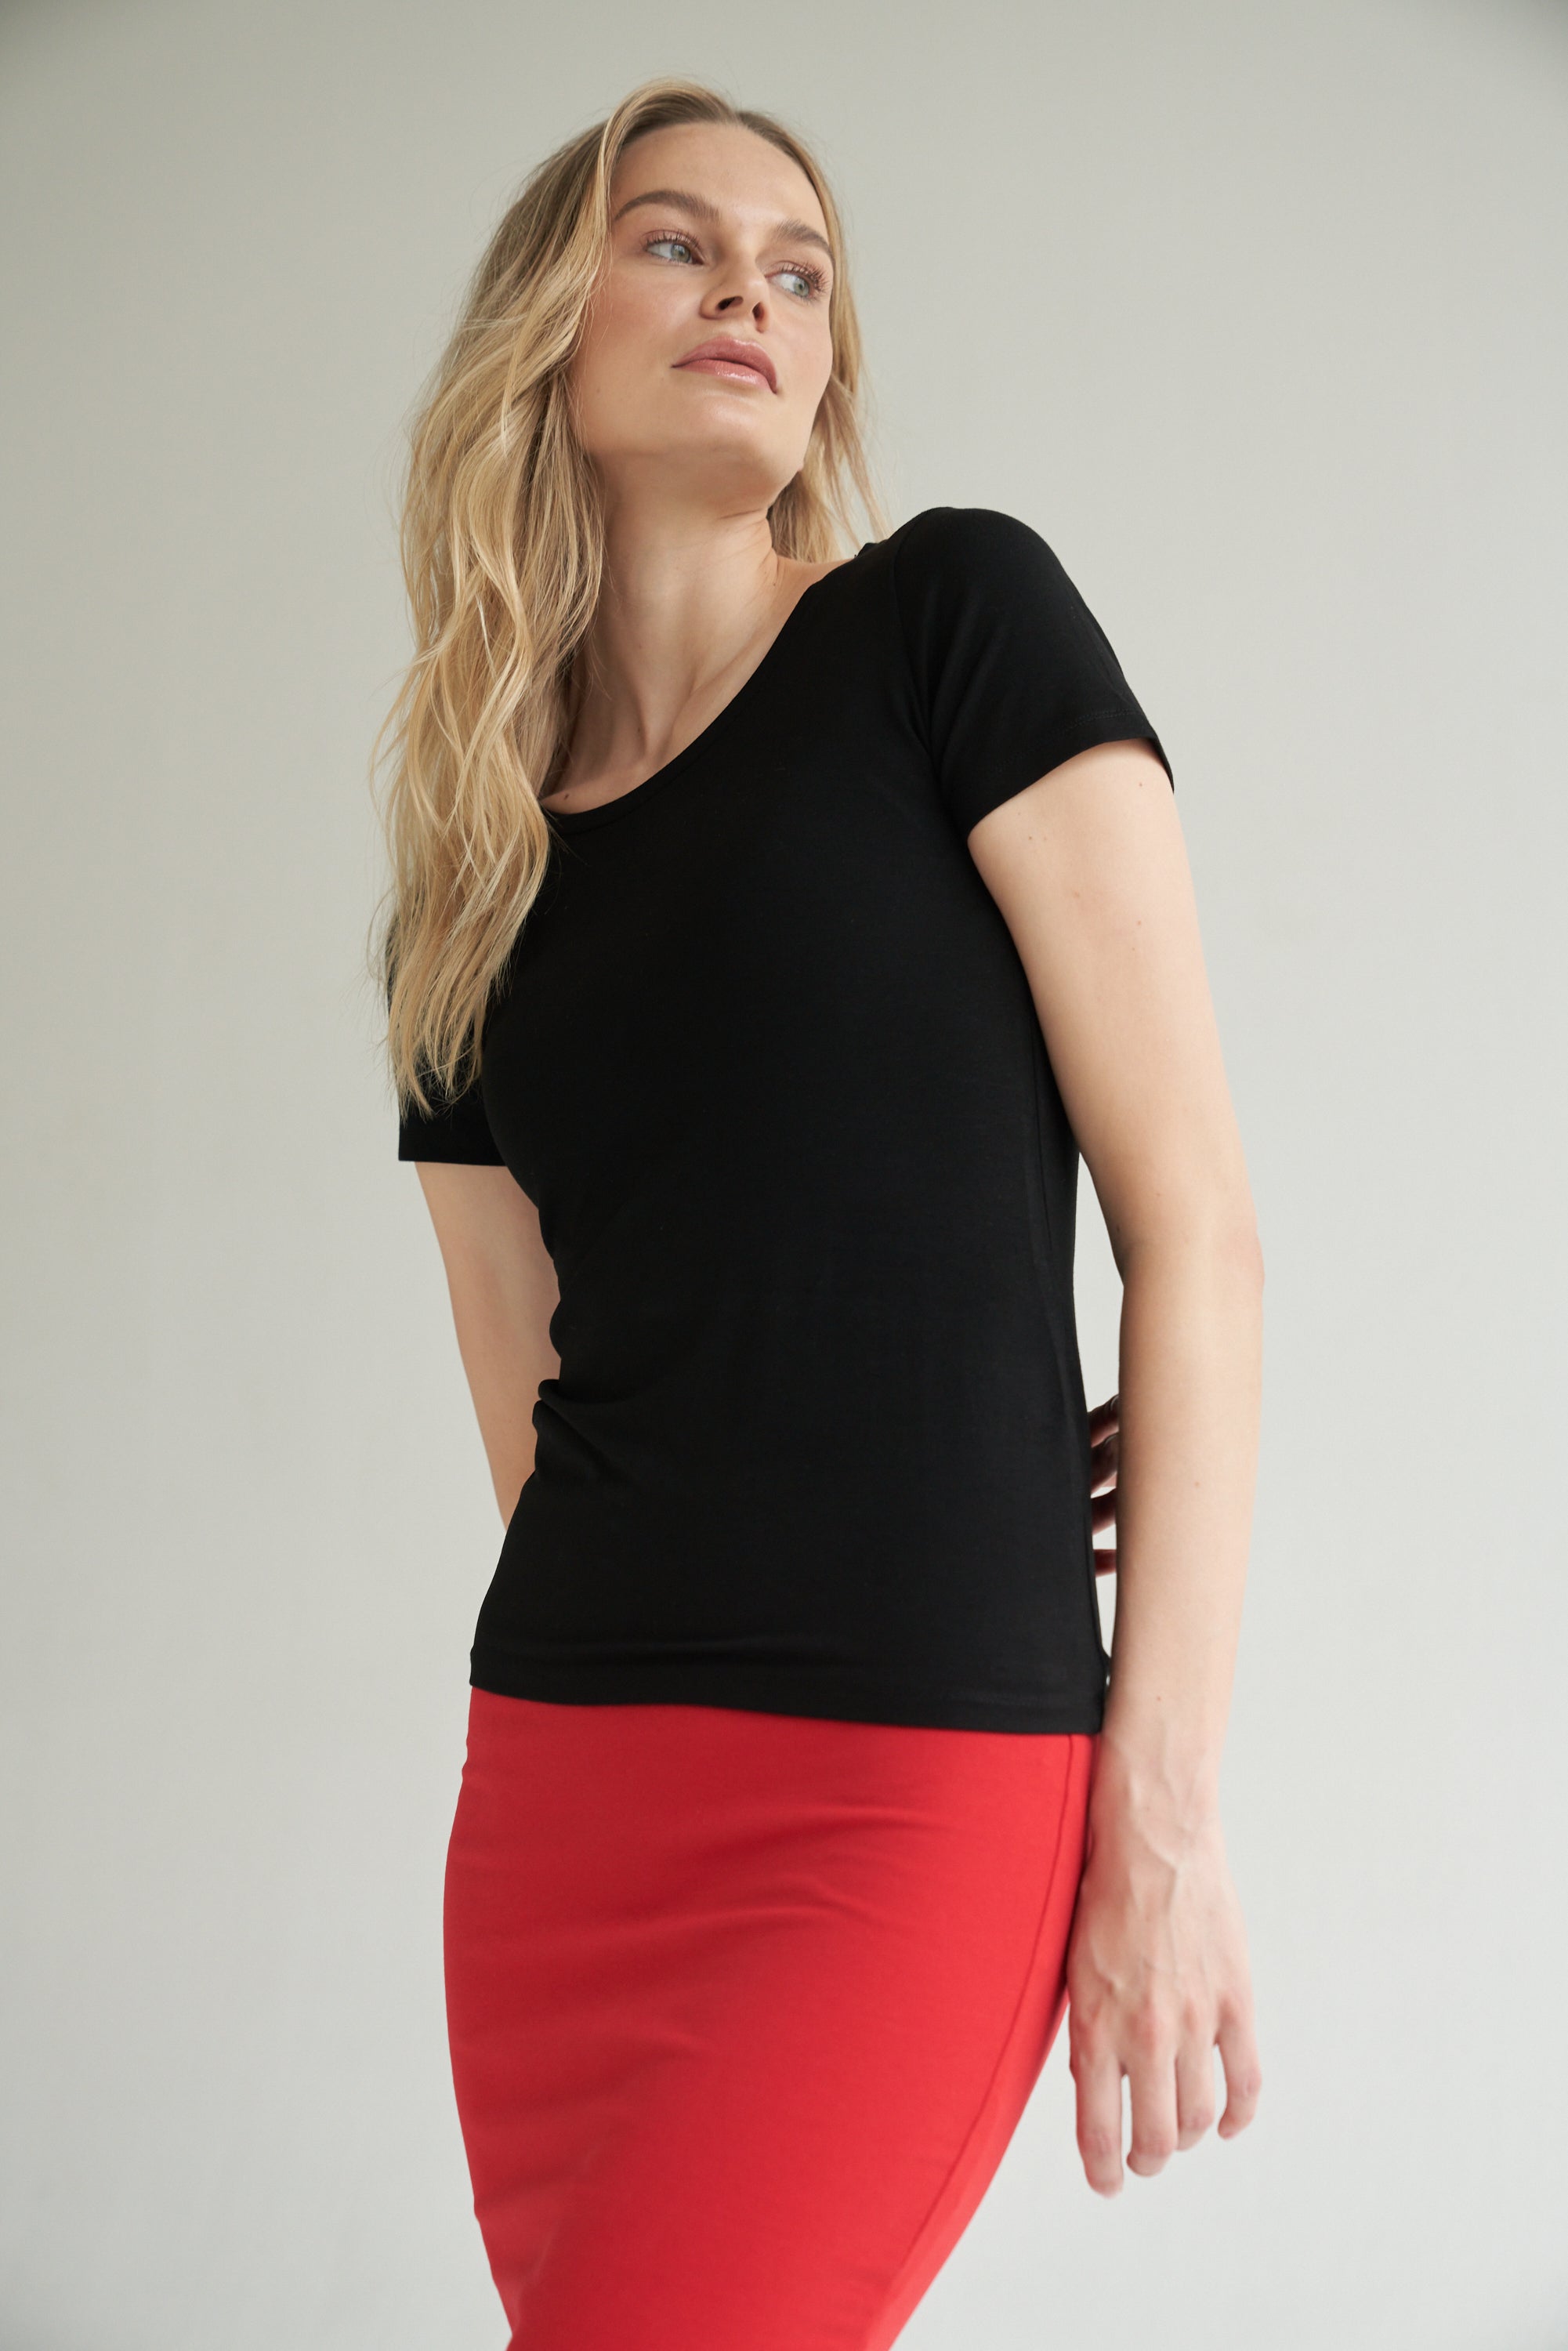 Schwarzes T-Shirt kombiniert mit einem roten Bleistiftrock wird von einem blonden Model getragen.